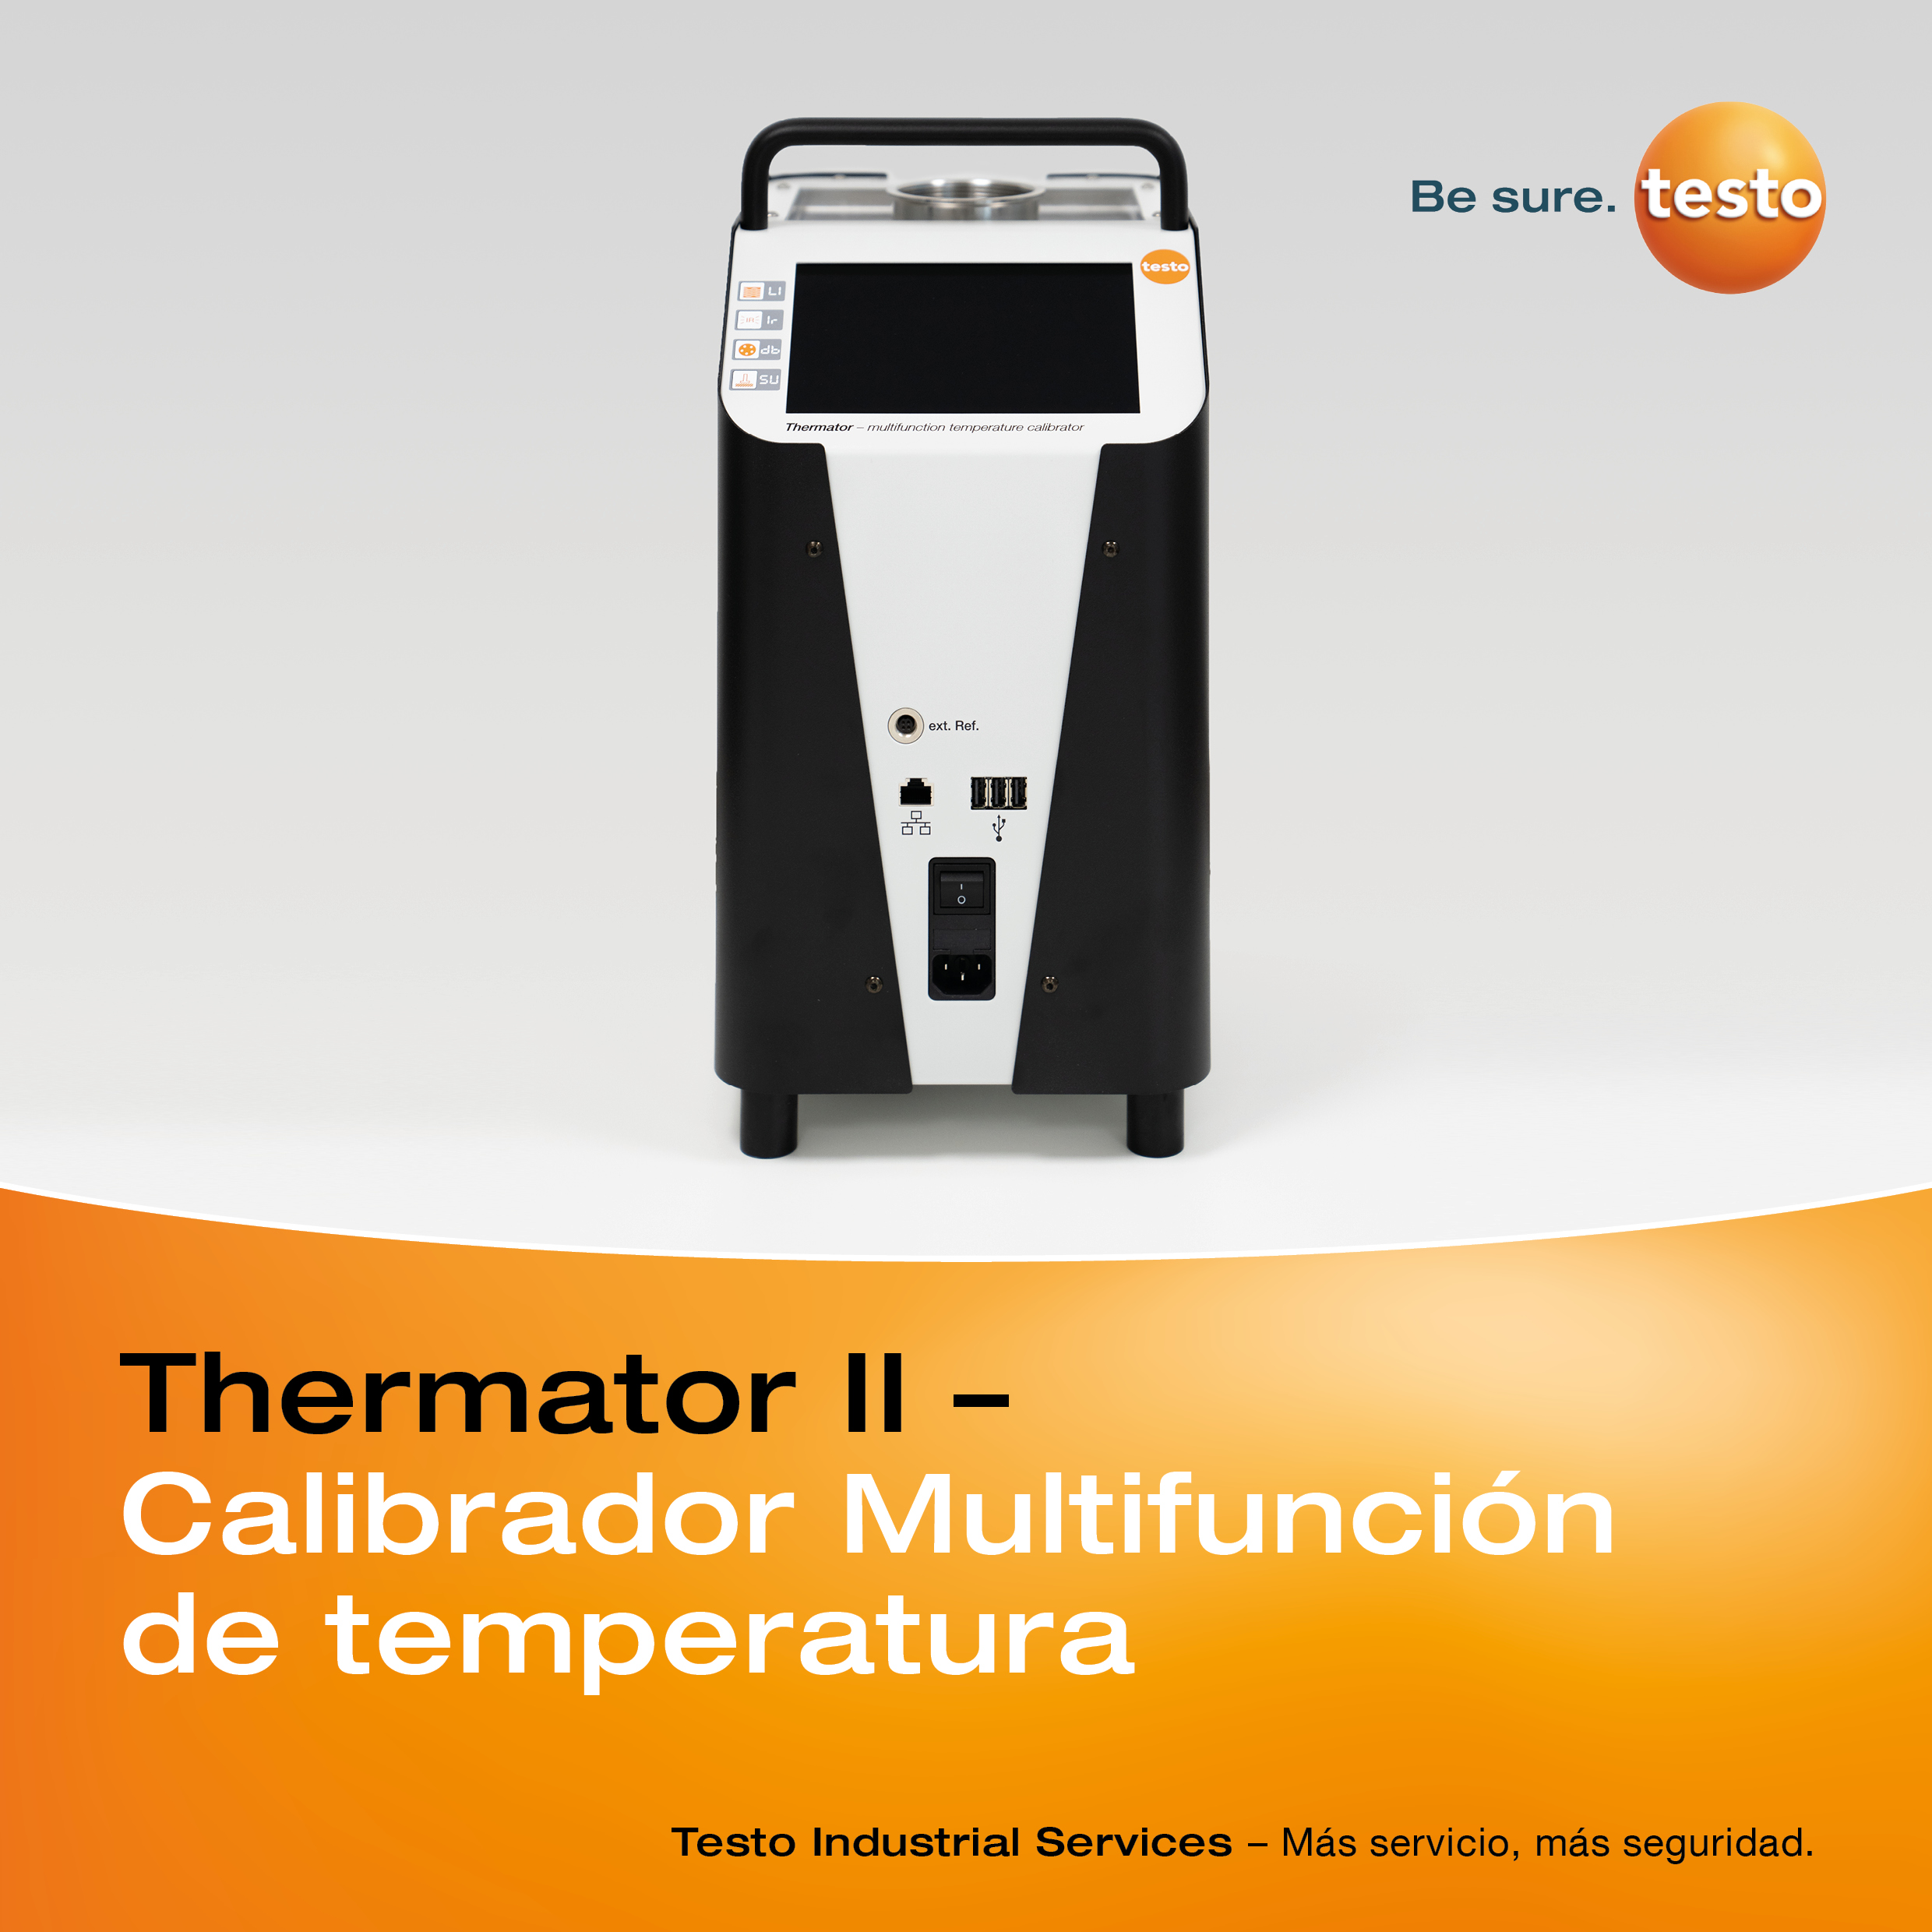 thermator-2-calibrador-multifuncion-de-temperatura.jpg